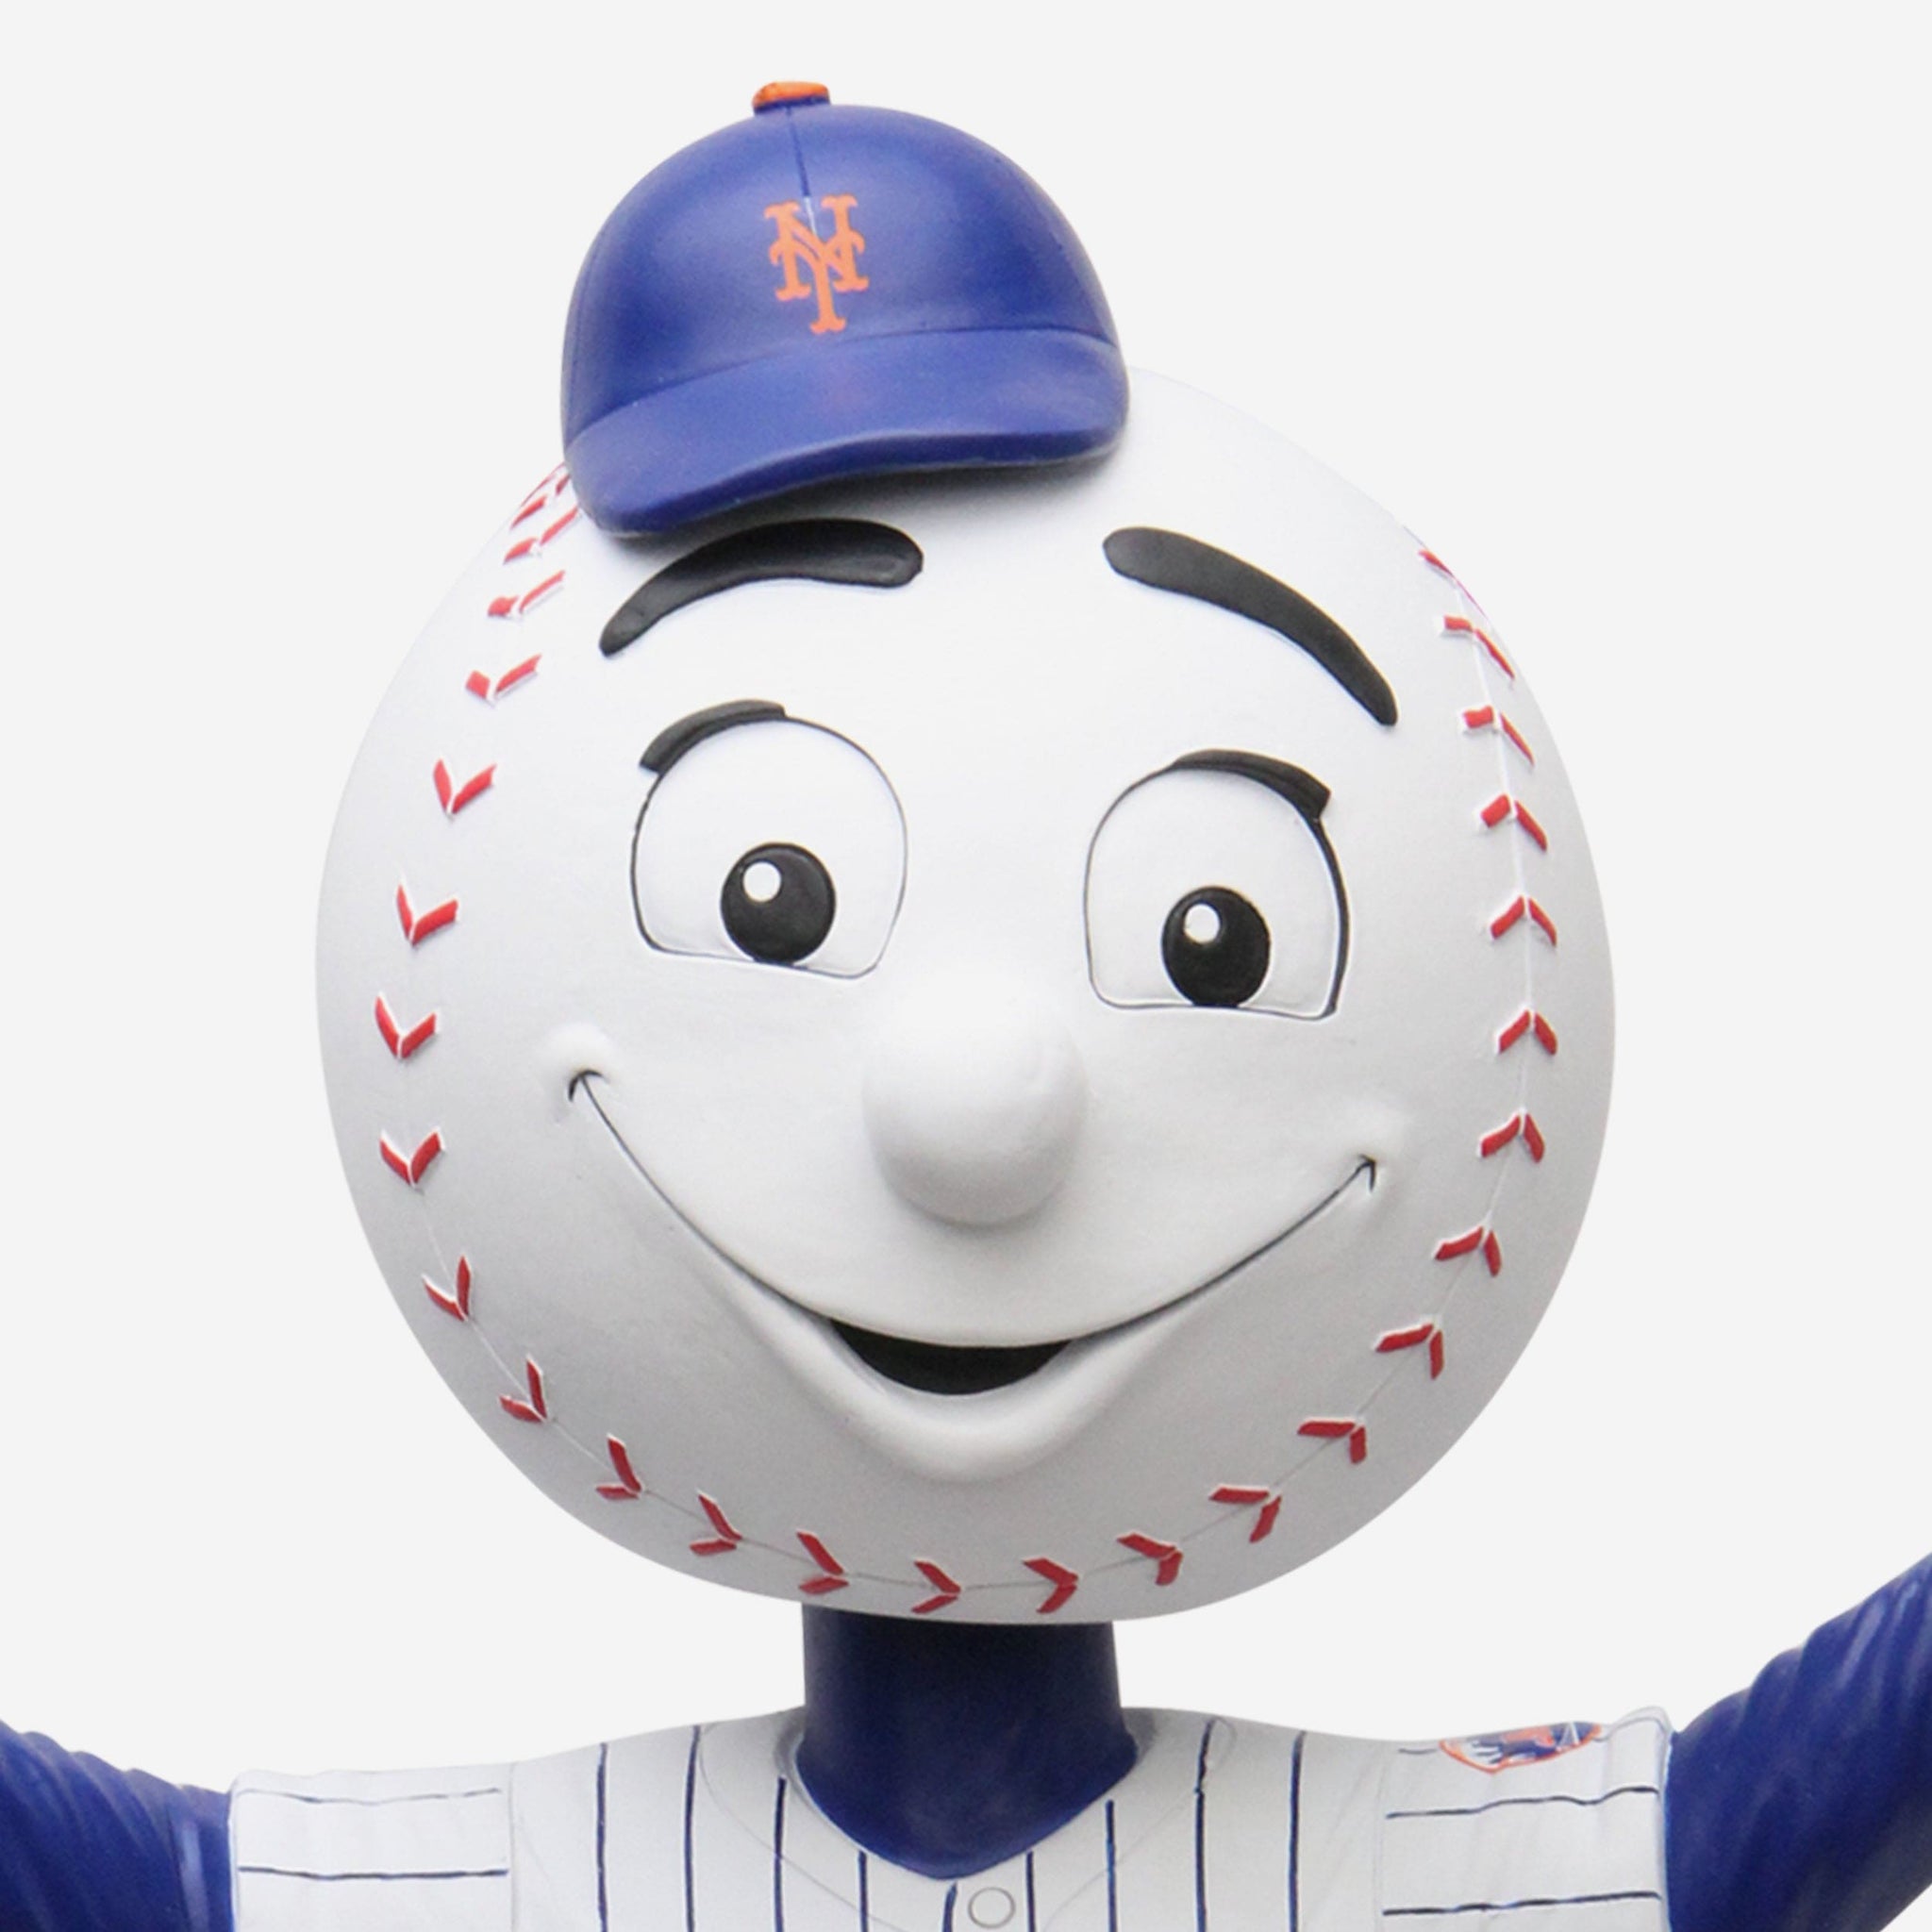 MR. MET New York Mets “Bullpen Cart” The7Line EXCLUSIVE Mascot Bobblehead  NIB!